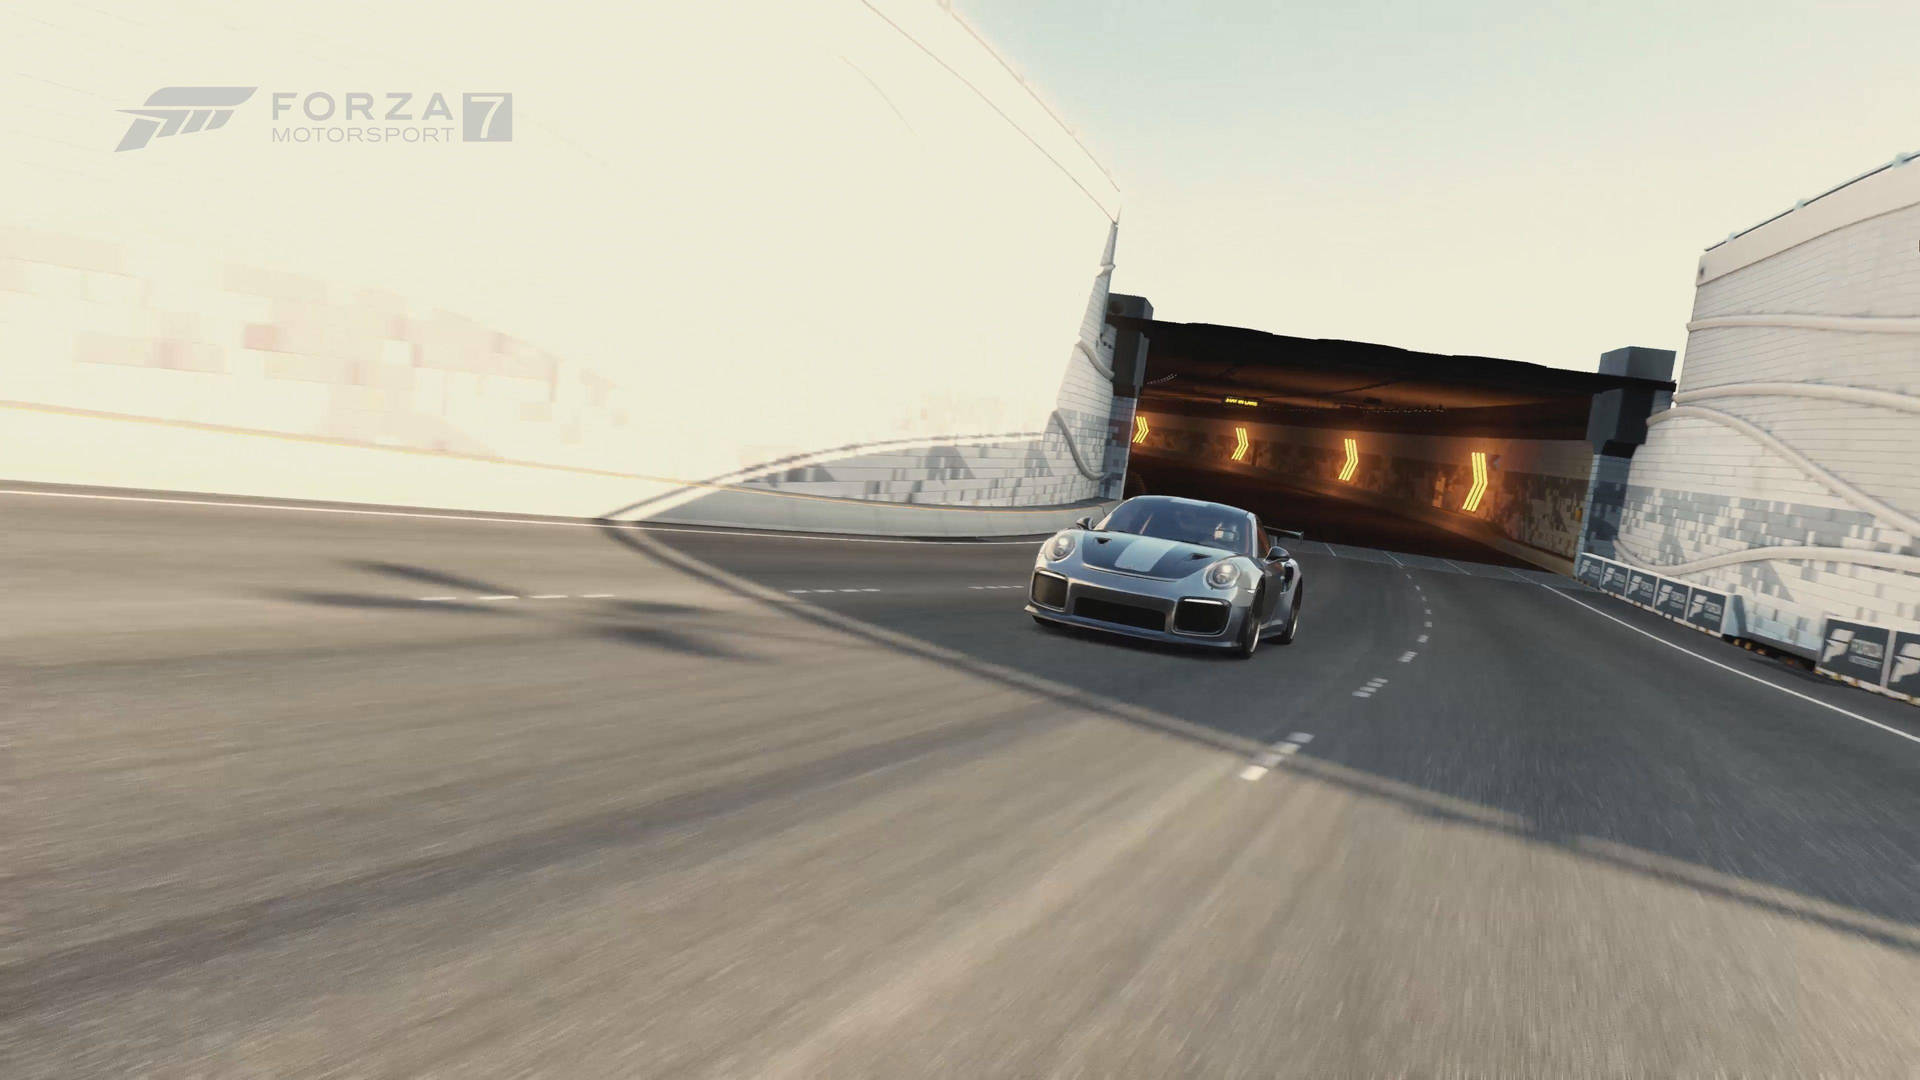 Live Wallpaper med en Porsche Go Kart, der kører med hastighed på Forza 7. Wallpaper